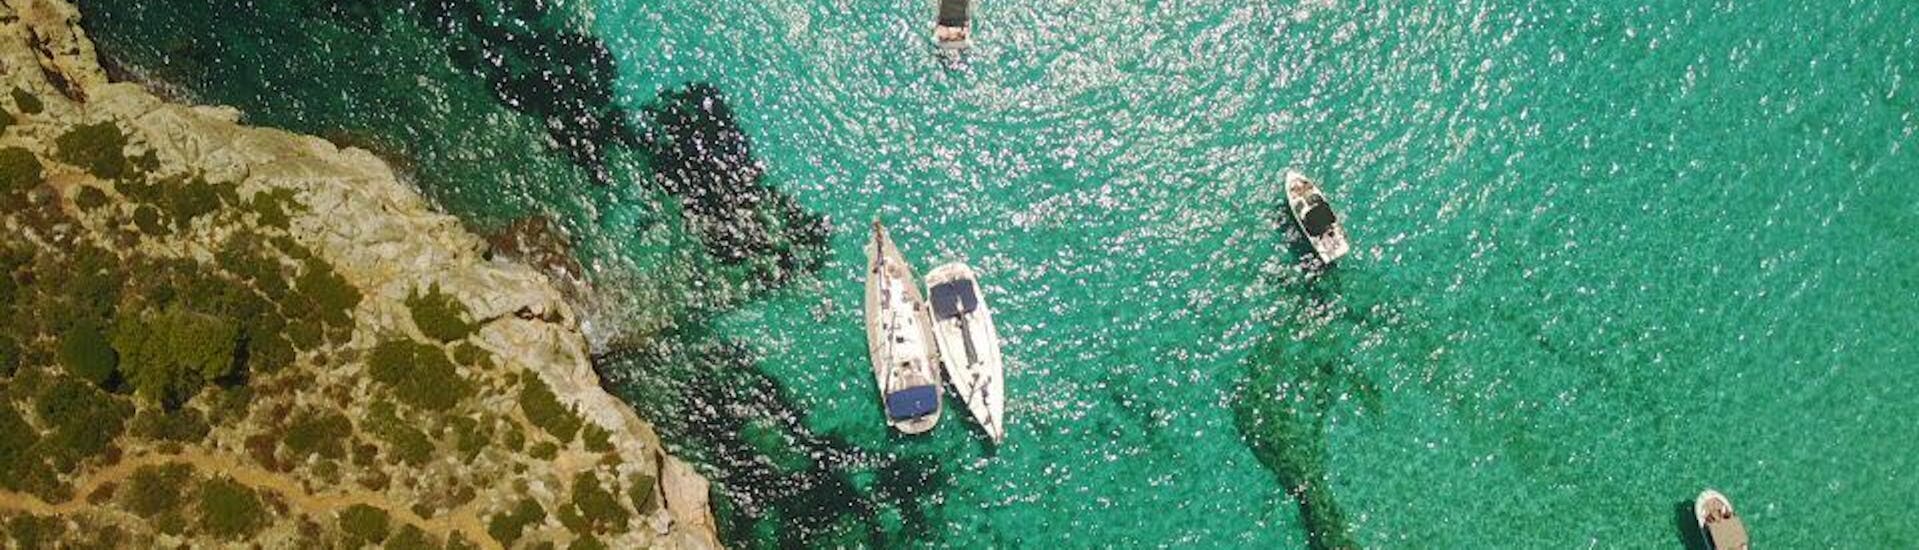 Segeltour von Portocolom - Cala Varques mit Schwimmen & Sightseeing.